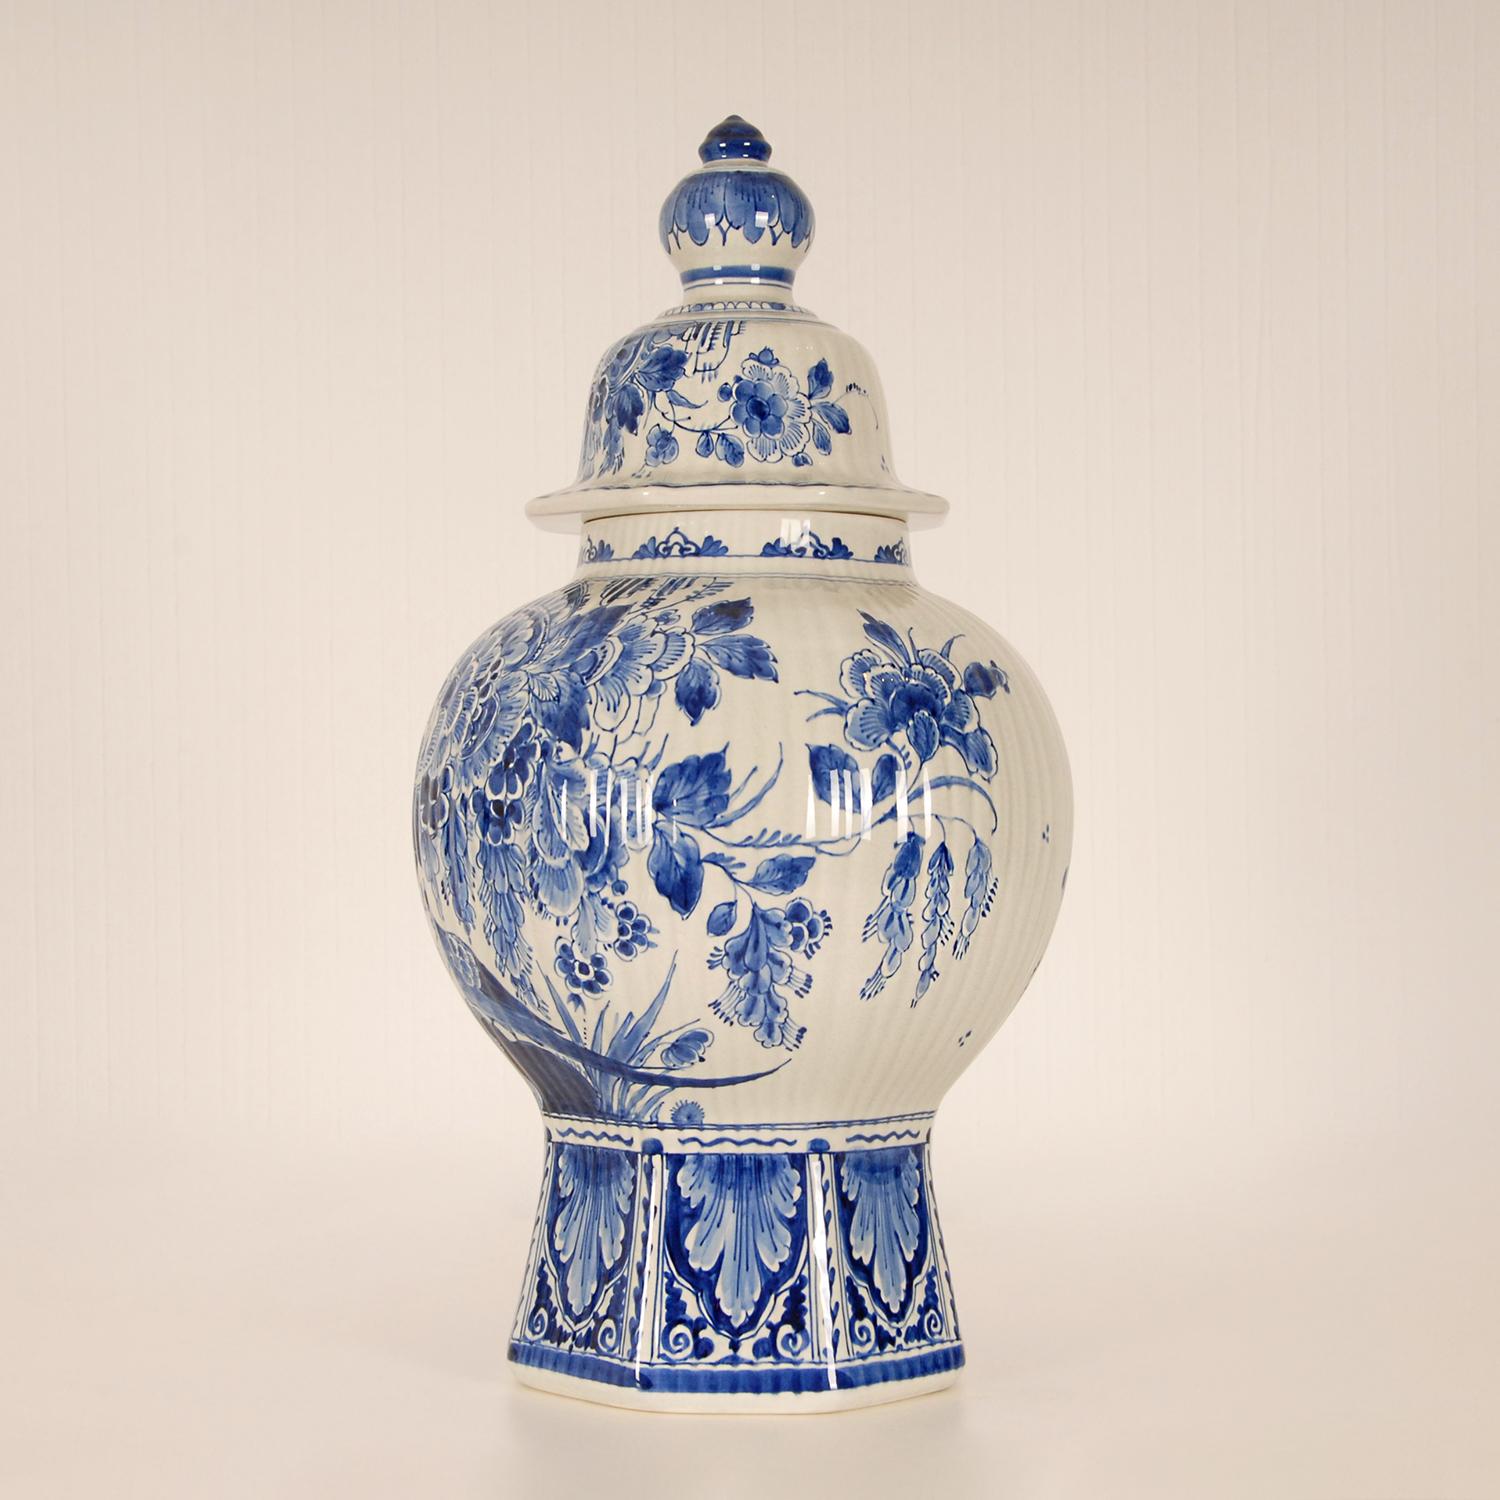 Dutch Royal Delft Covered Baluster Vase Earthenware Blue & White Vase Urn